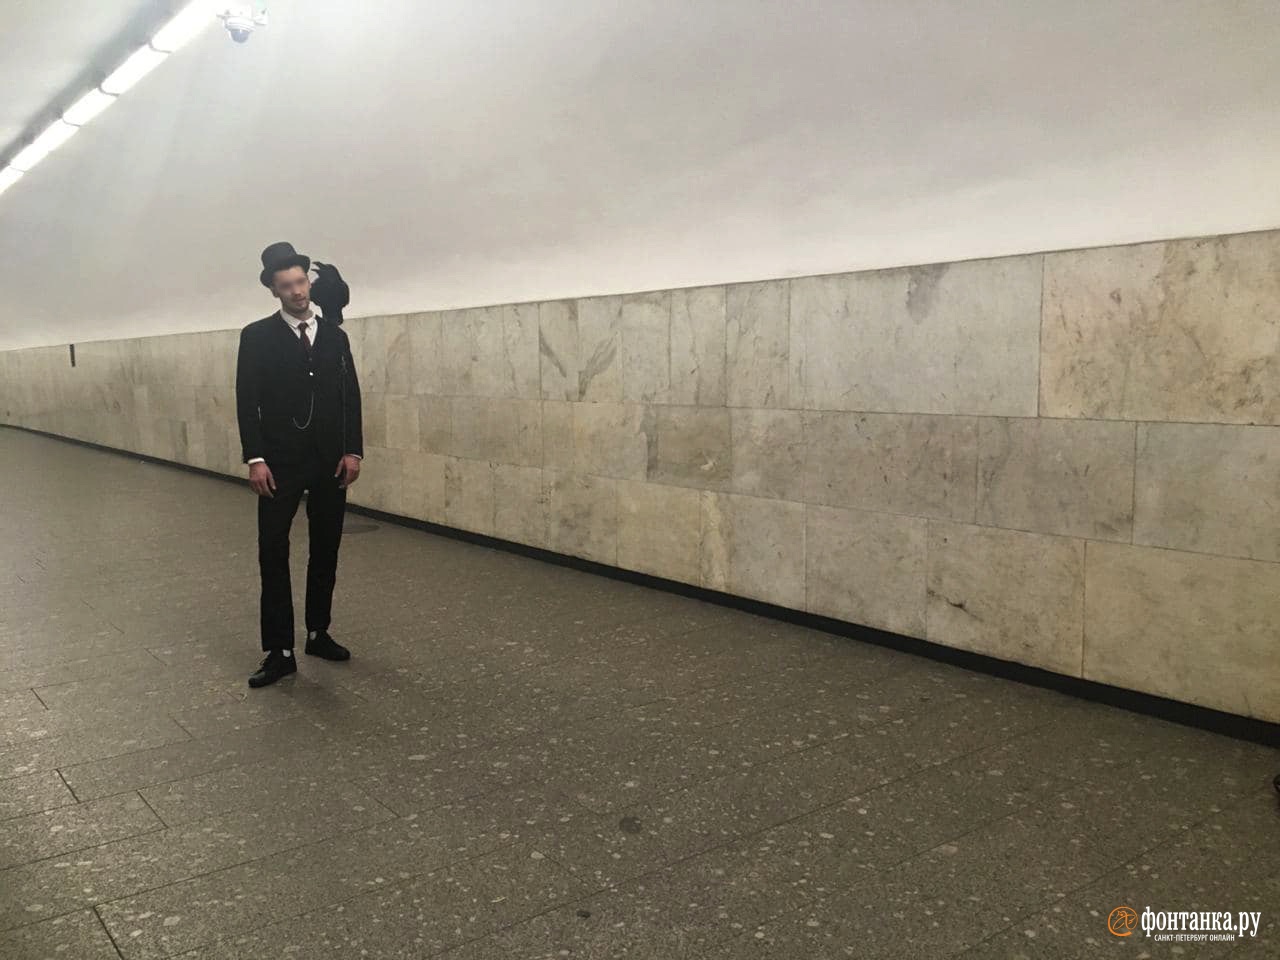 Мужчина, цилиндр и ворон. Франты-полуночники посетили петербургское метро